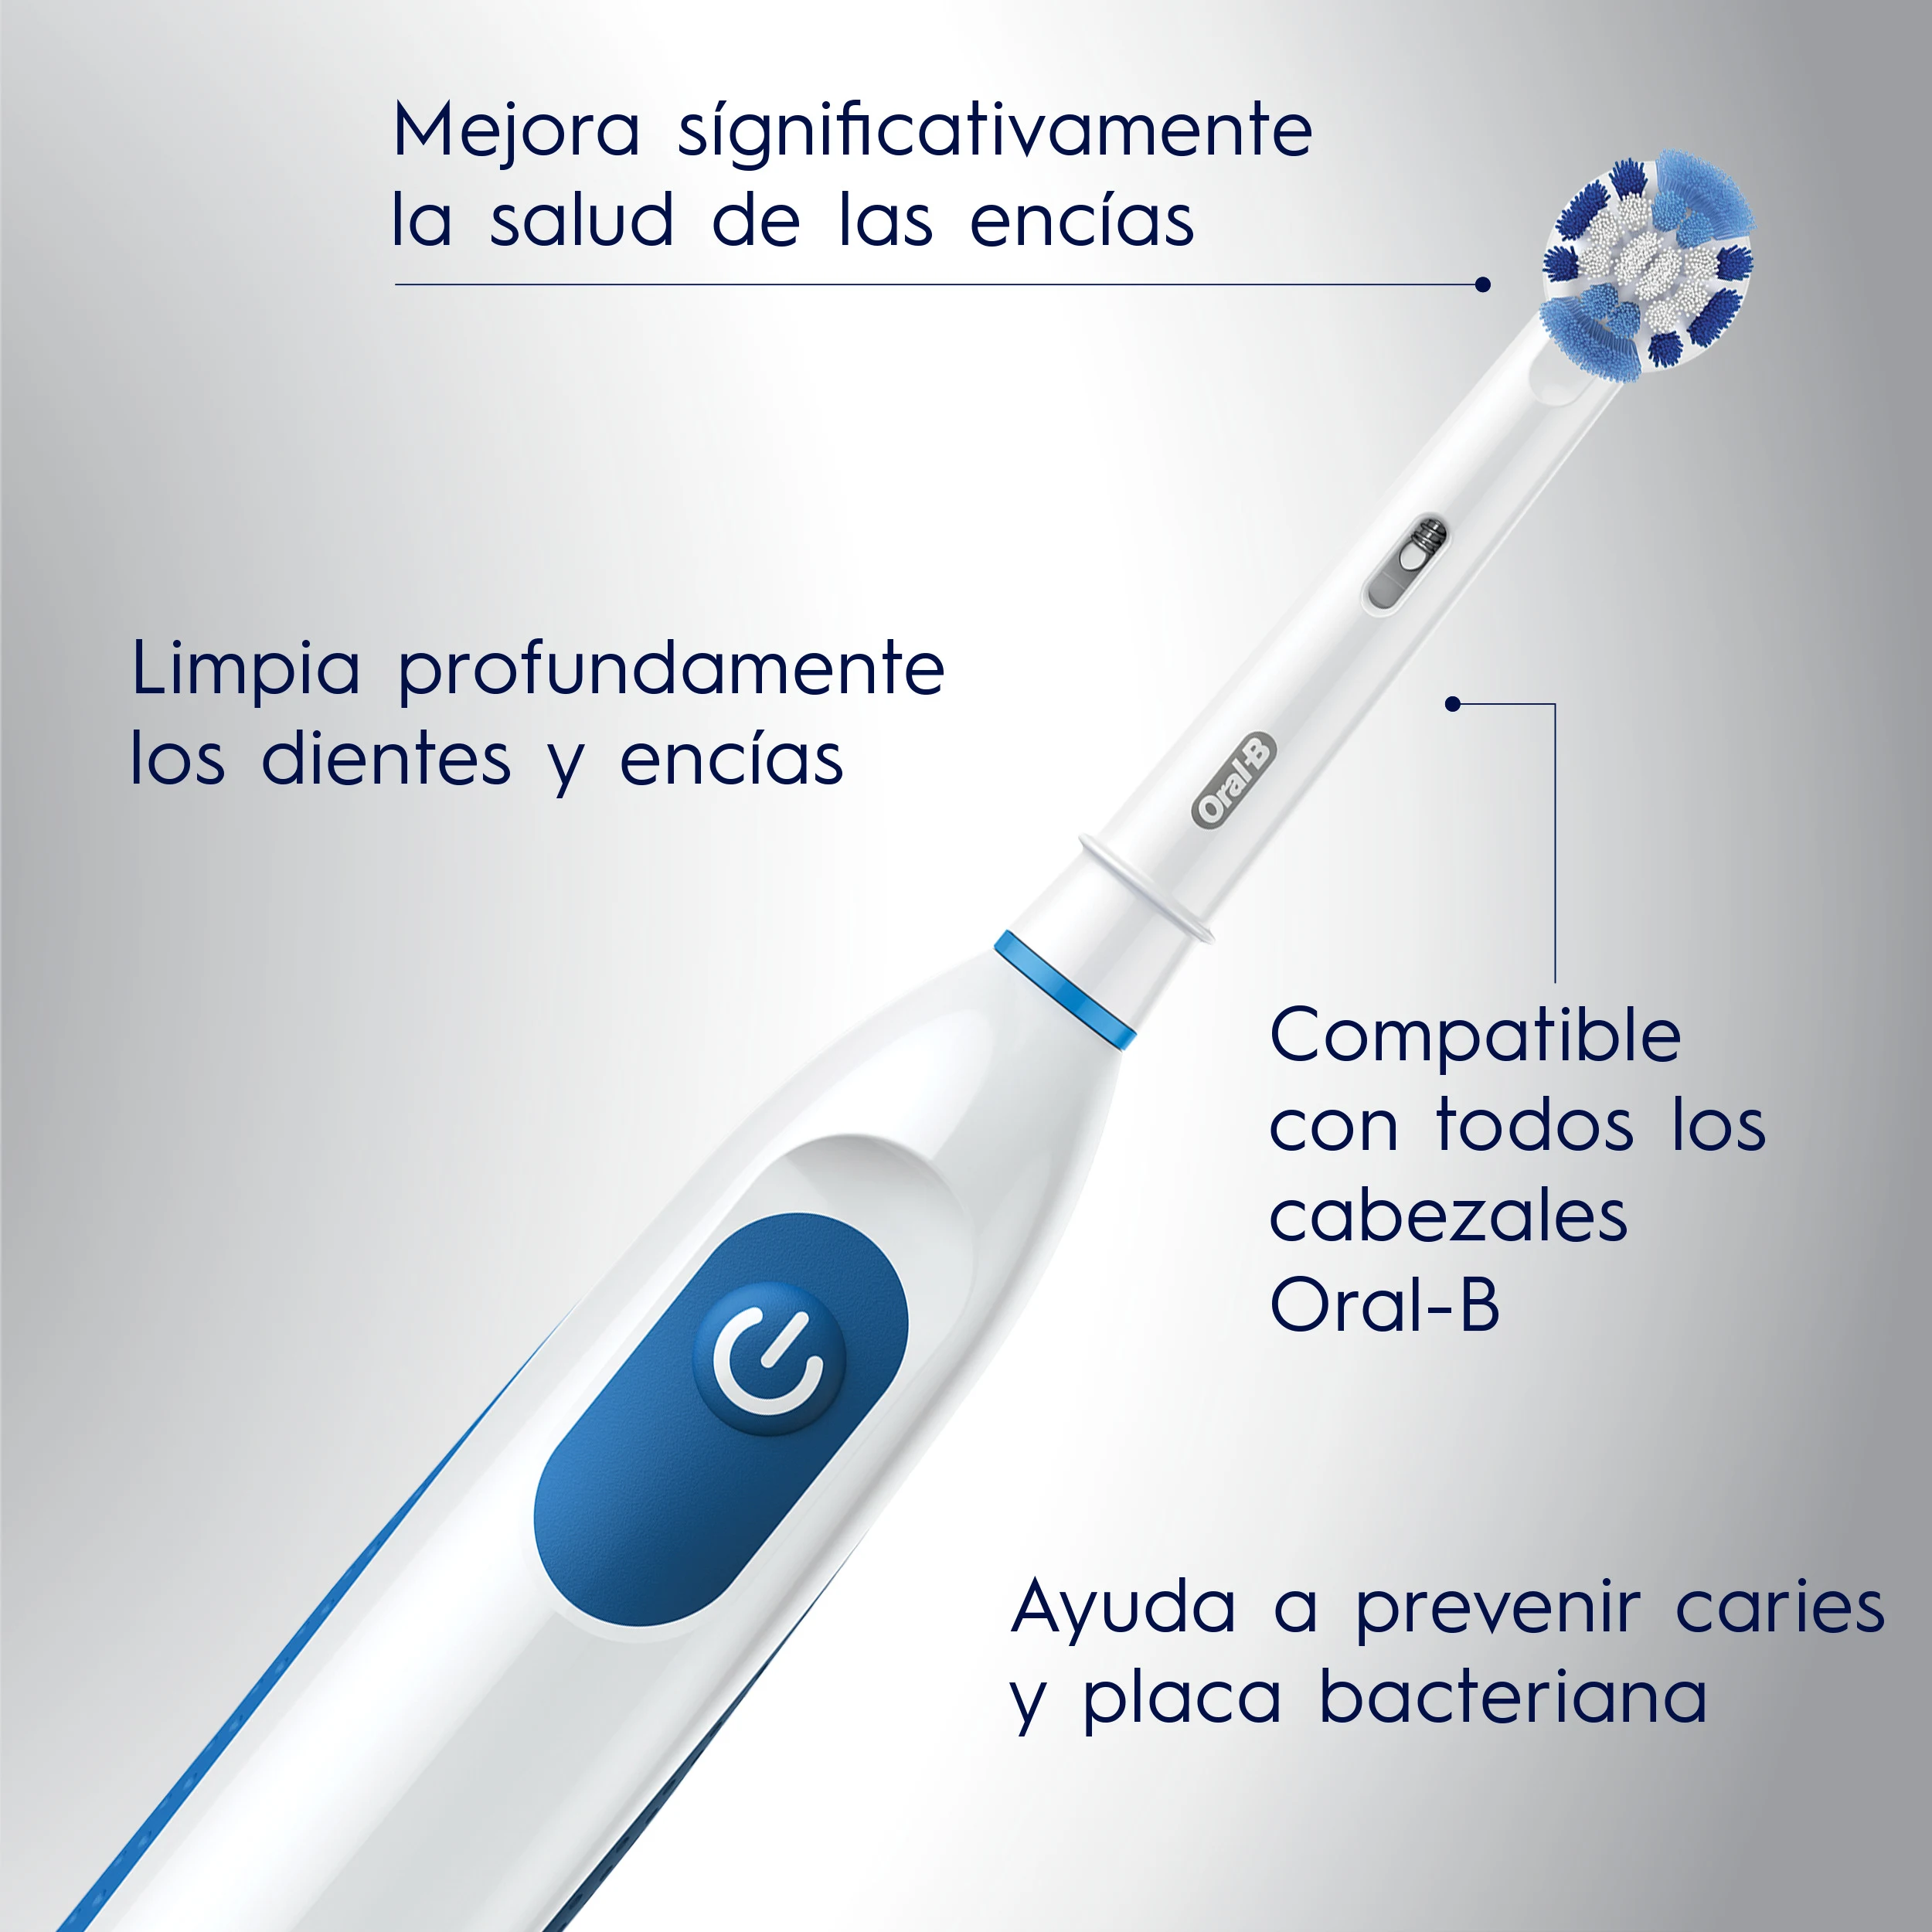 Oral-B - Cepillo de dientes eléctrico con 3 cabezales de repuesto.